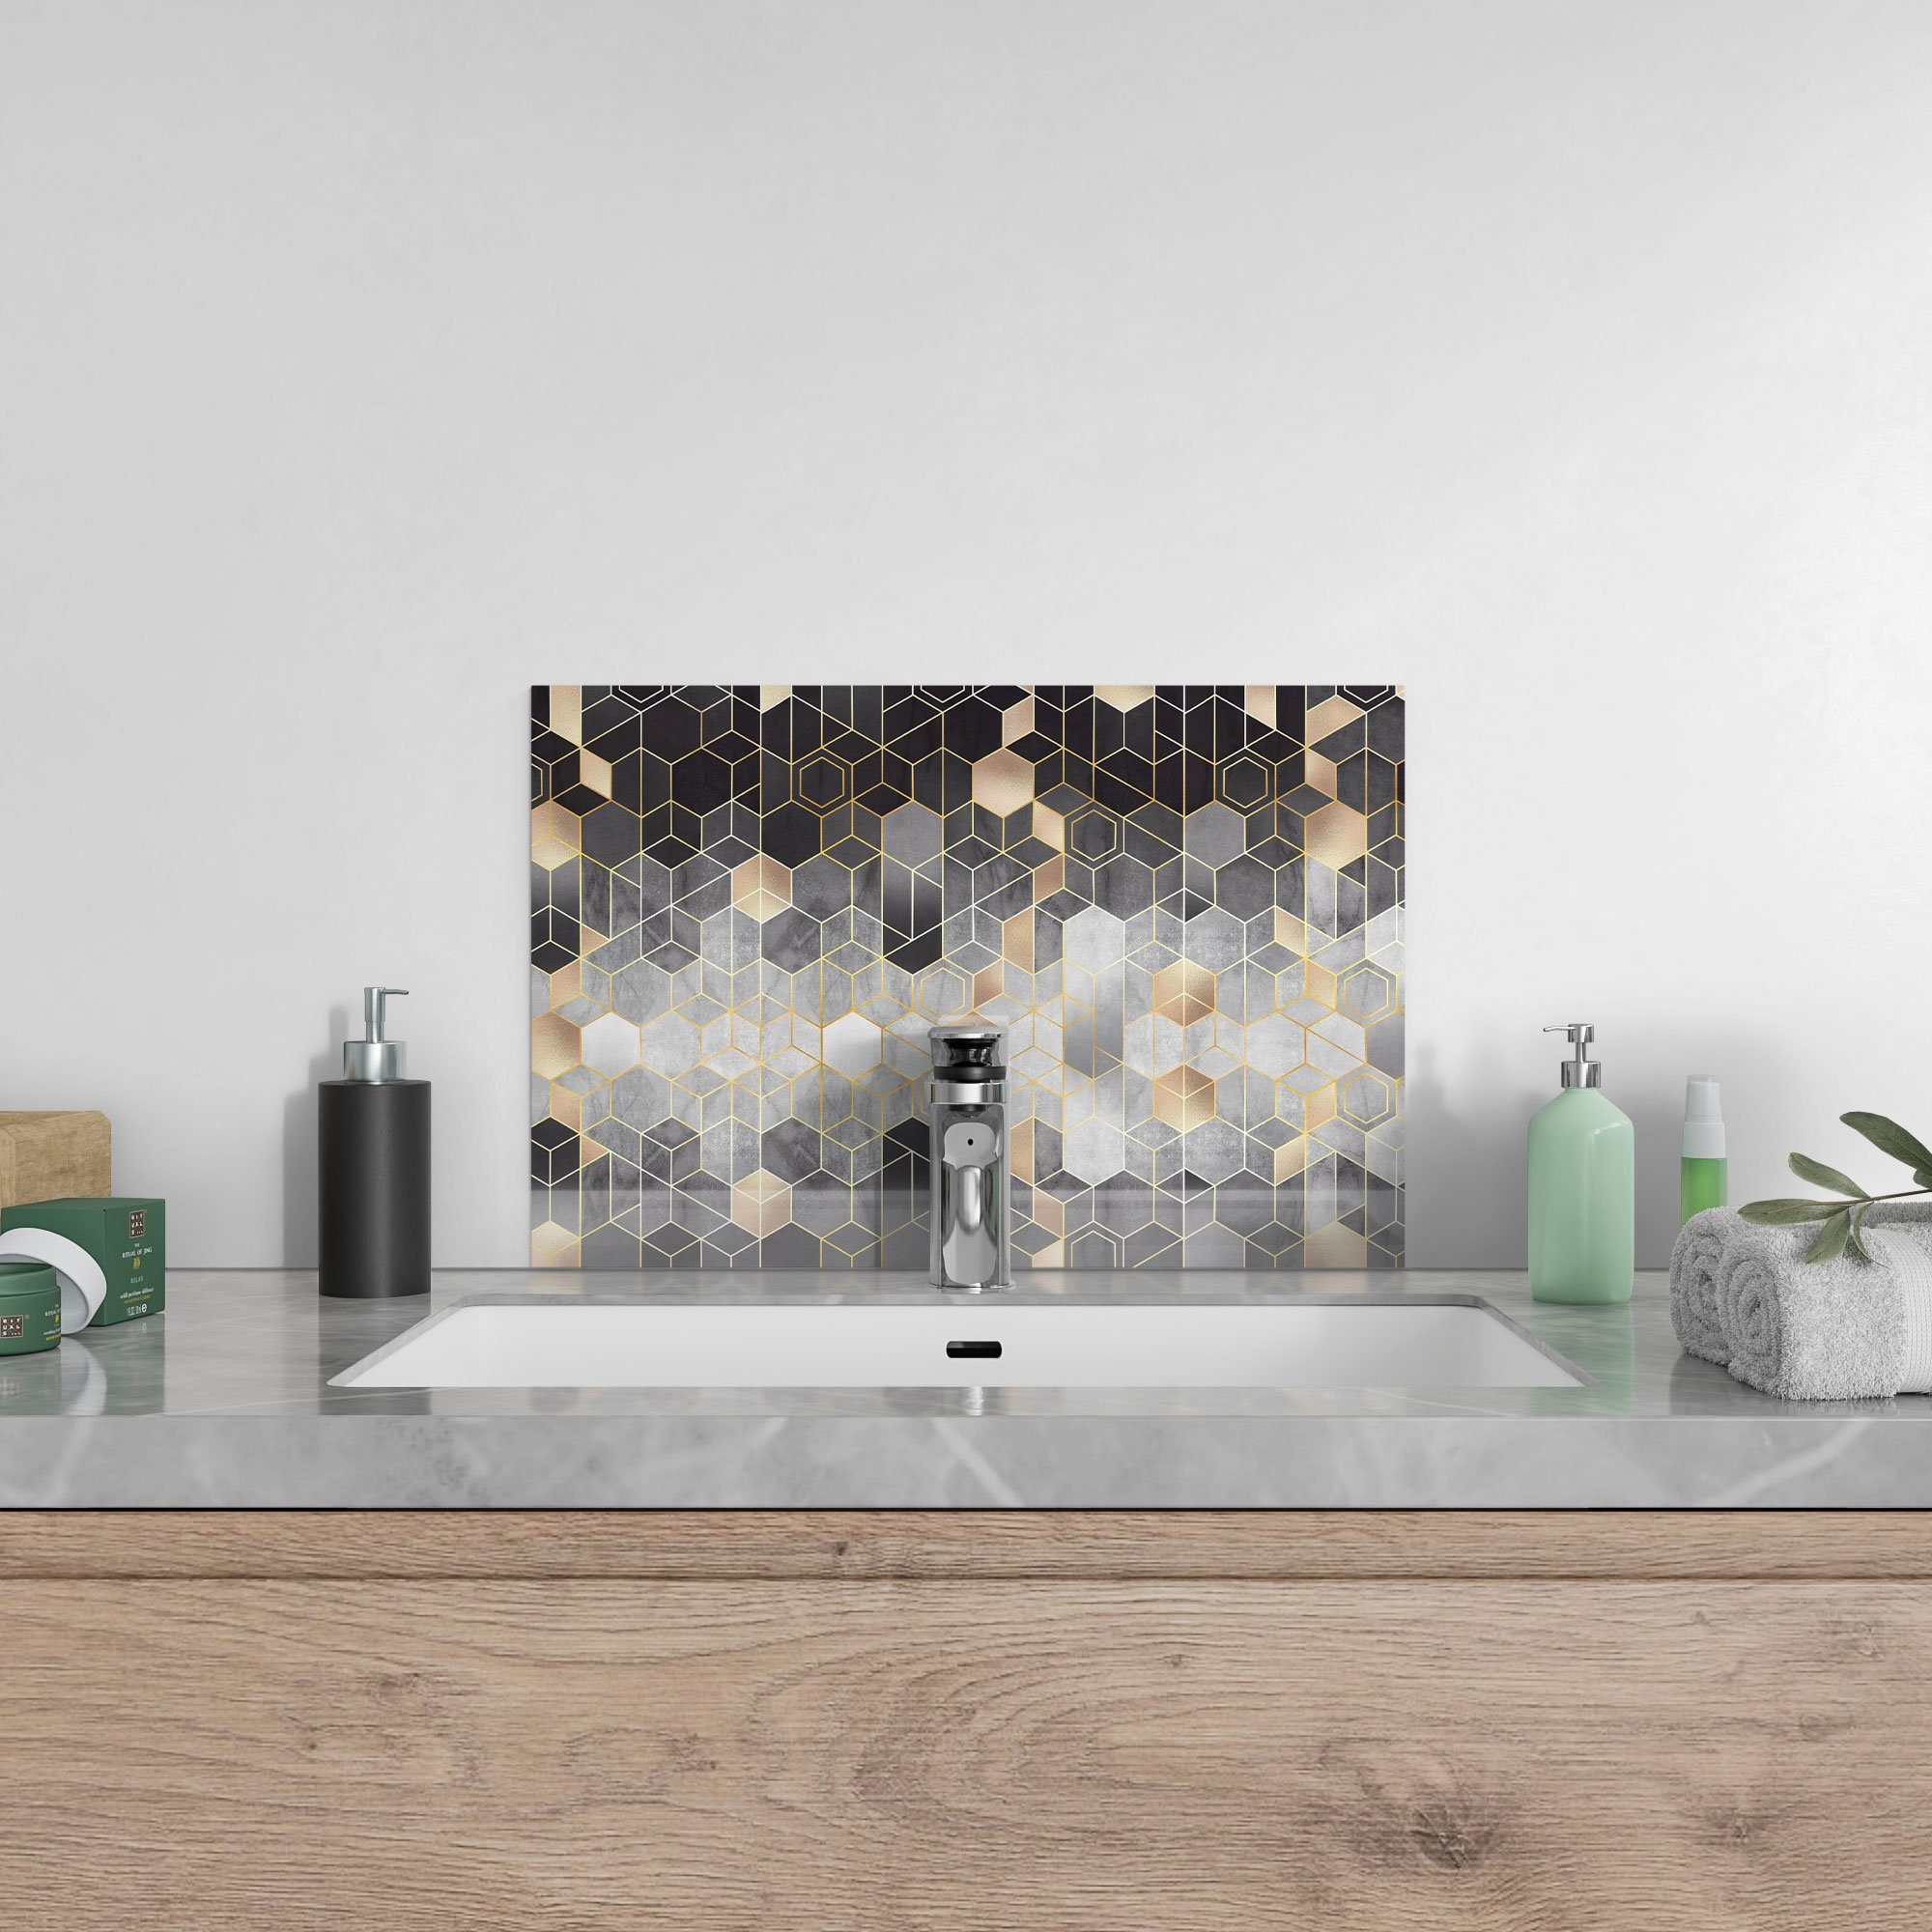 'Kunstvolles Küchenrückwand Herdblende Spritzschutz Badrückwand Glas Wabenmuster', DEQORI